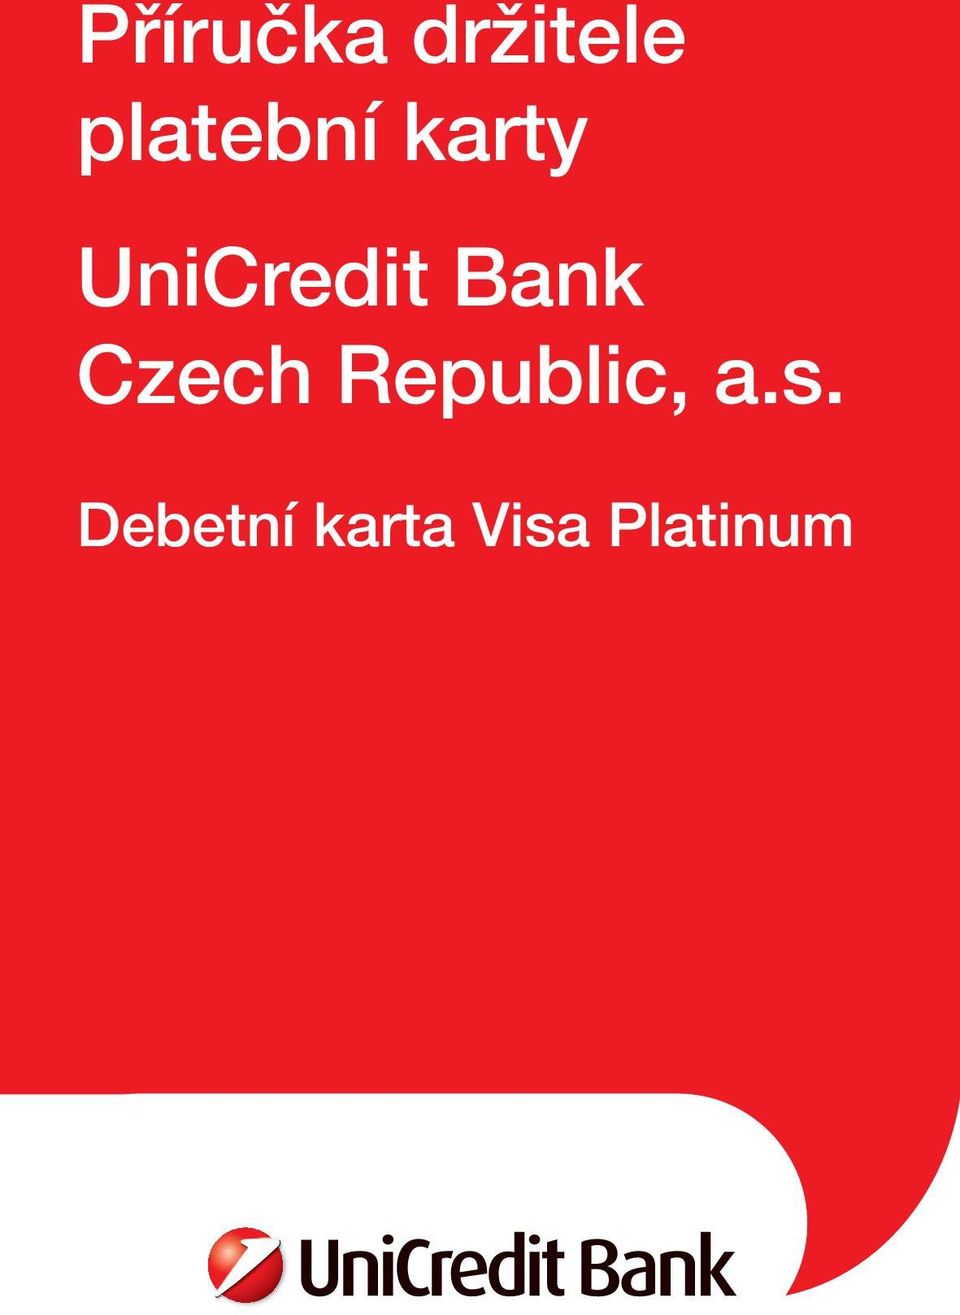 UniCredit Bank Czech